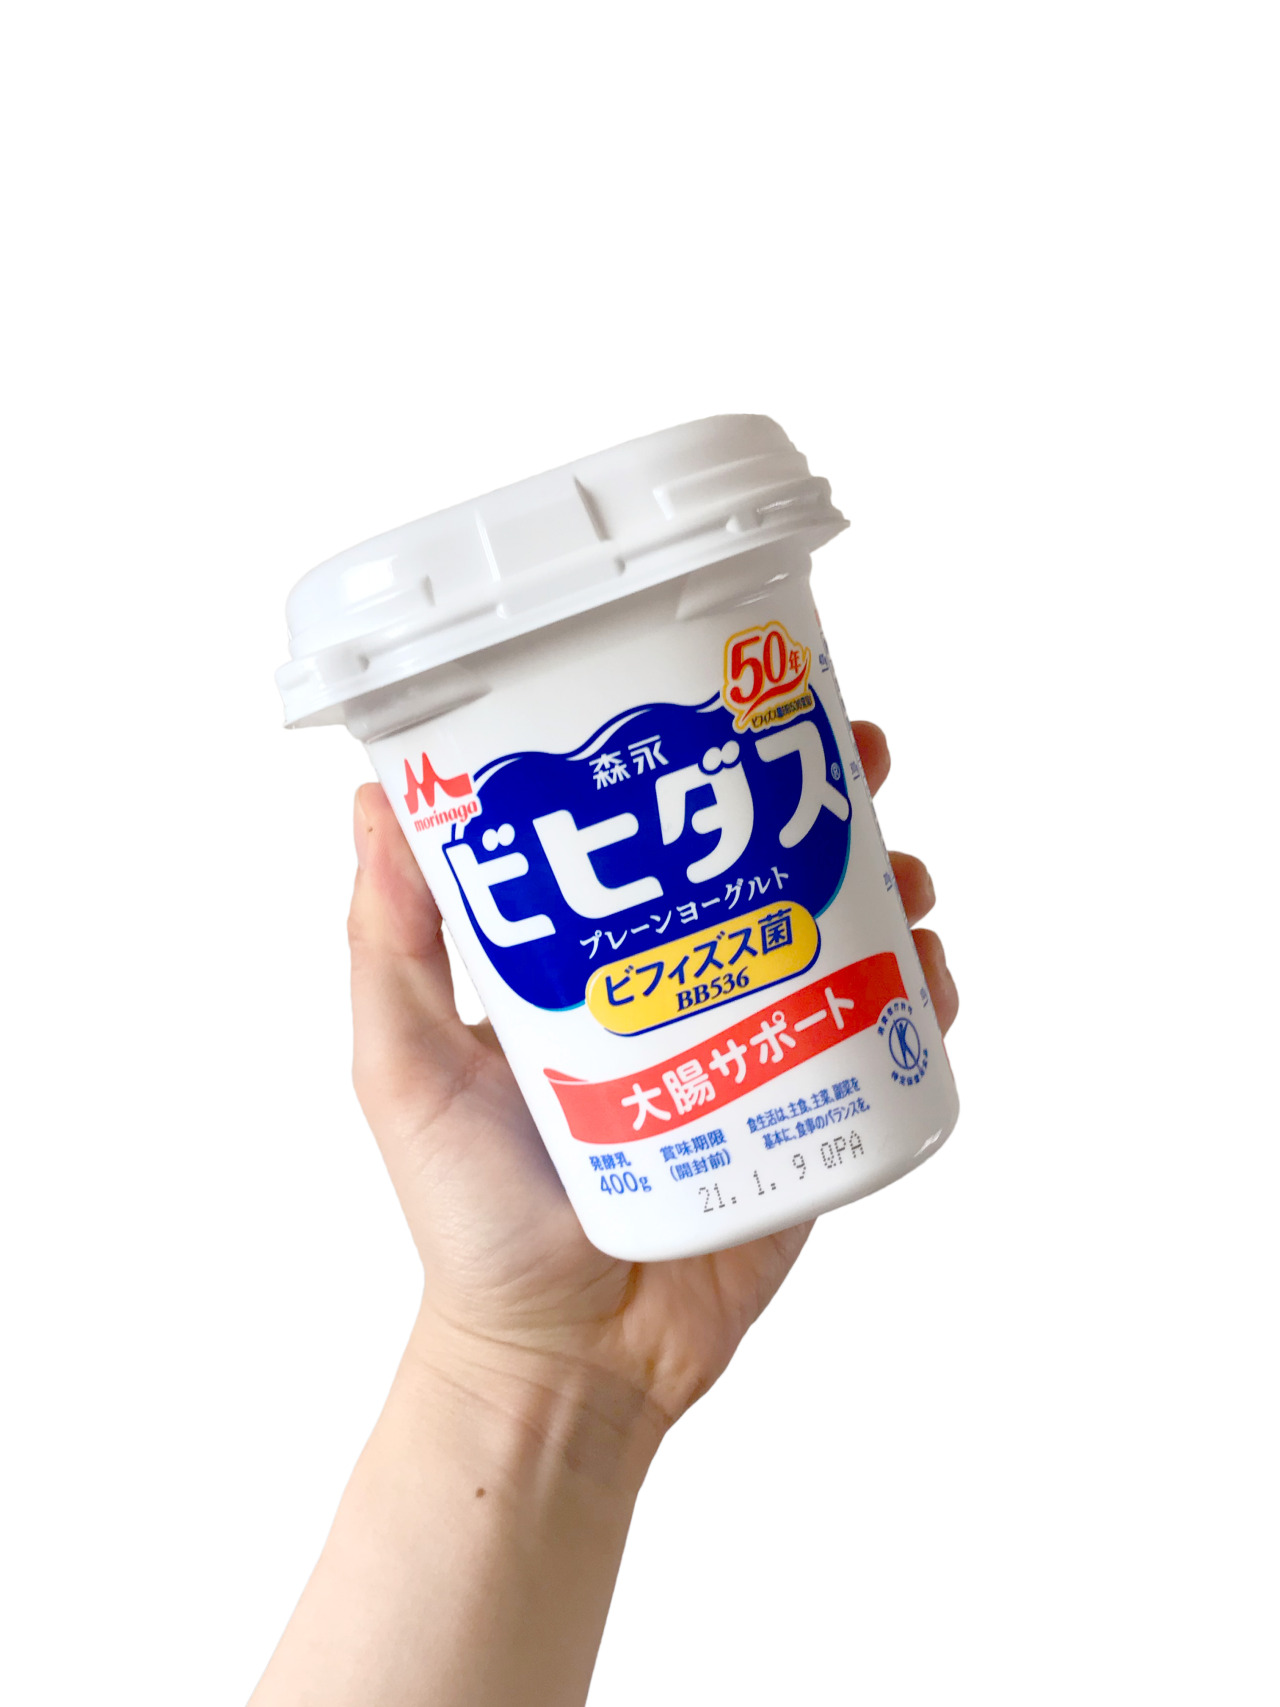 Yoghurt — 森永 ビヒダス プレーンヨーグルト ビヒダスのレポート書くの2014年ぶり????...